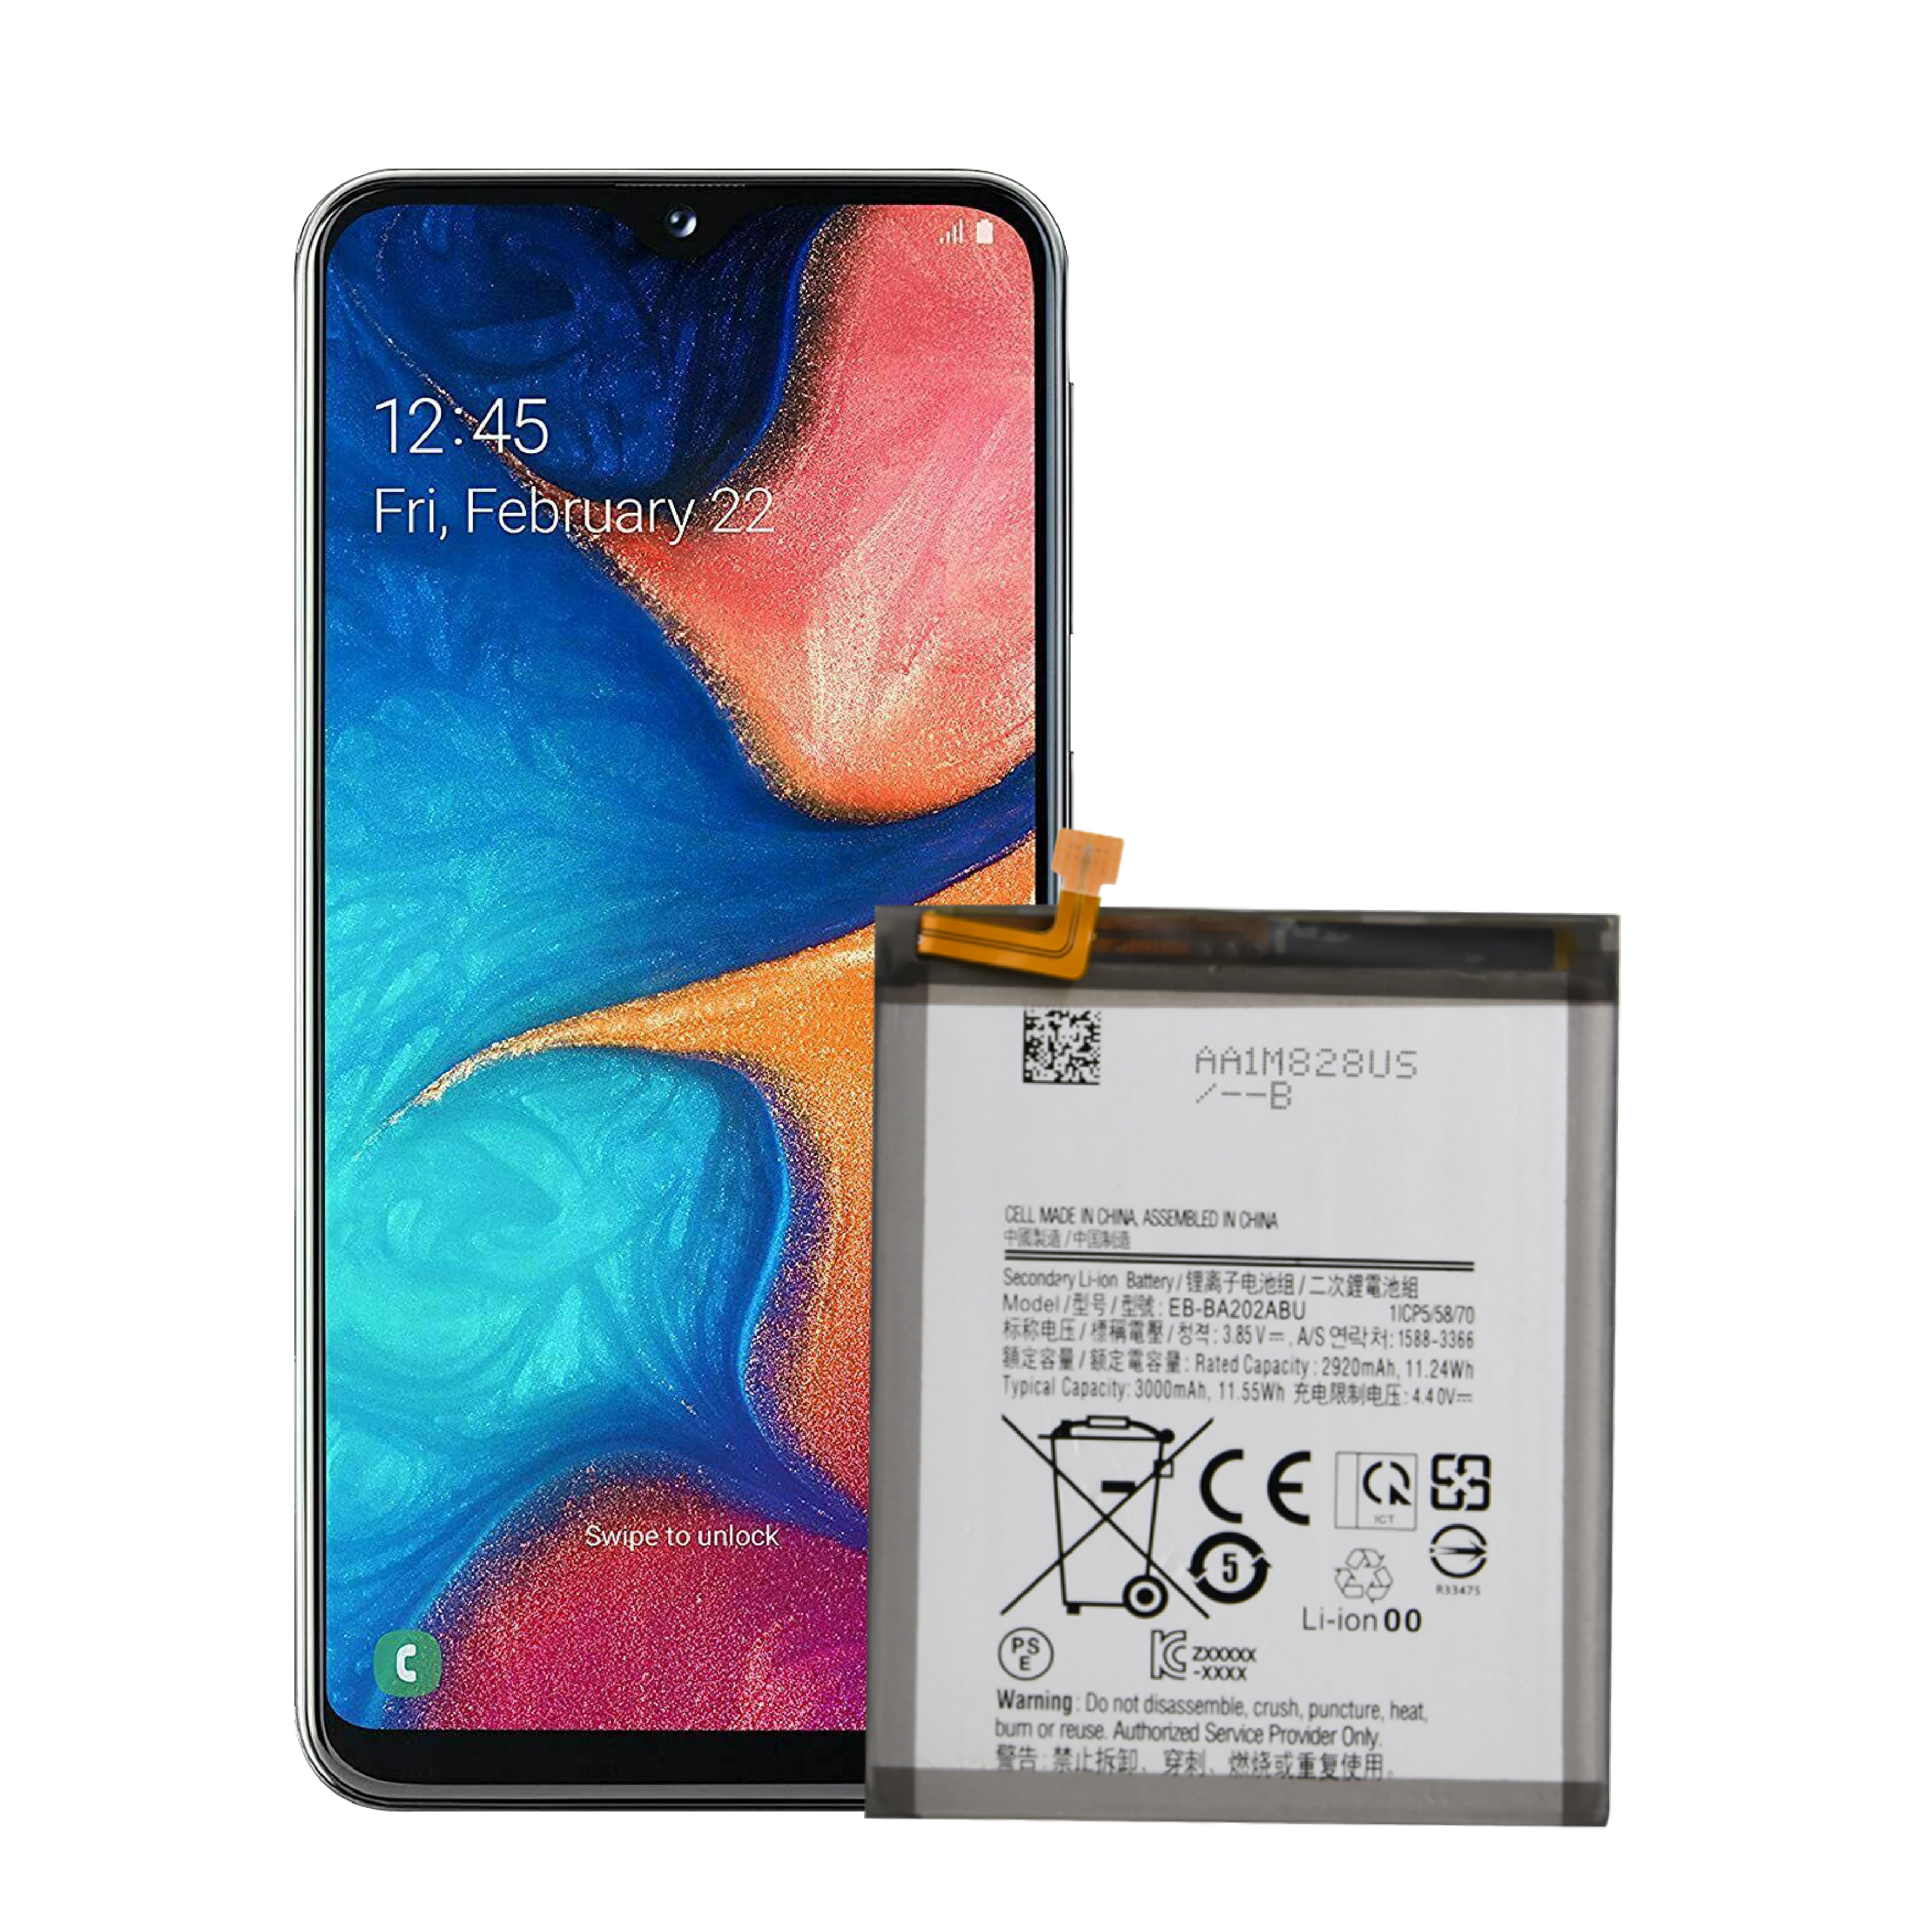 Sostituzione OEM nuovissima batteria del telefono a lunga durata per batteria Samsung A20 Edge